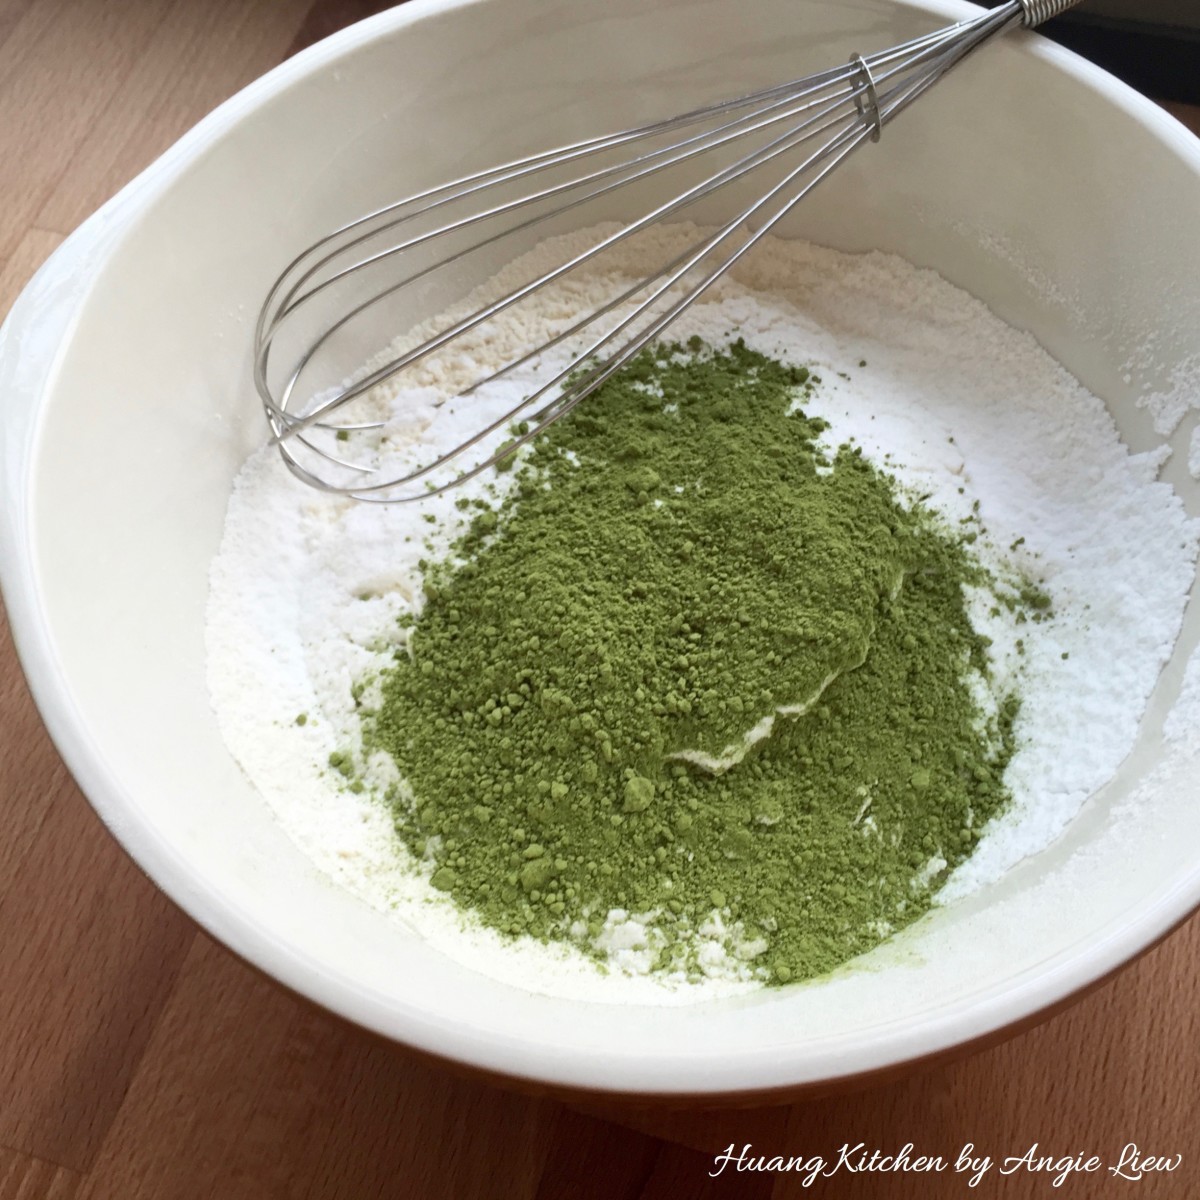 Add green tea powder into flour.